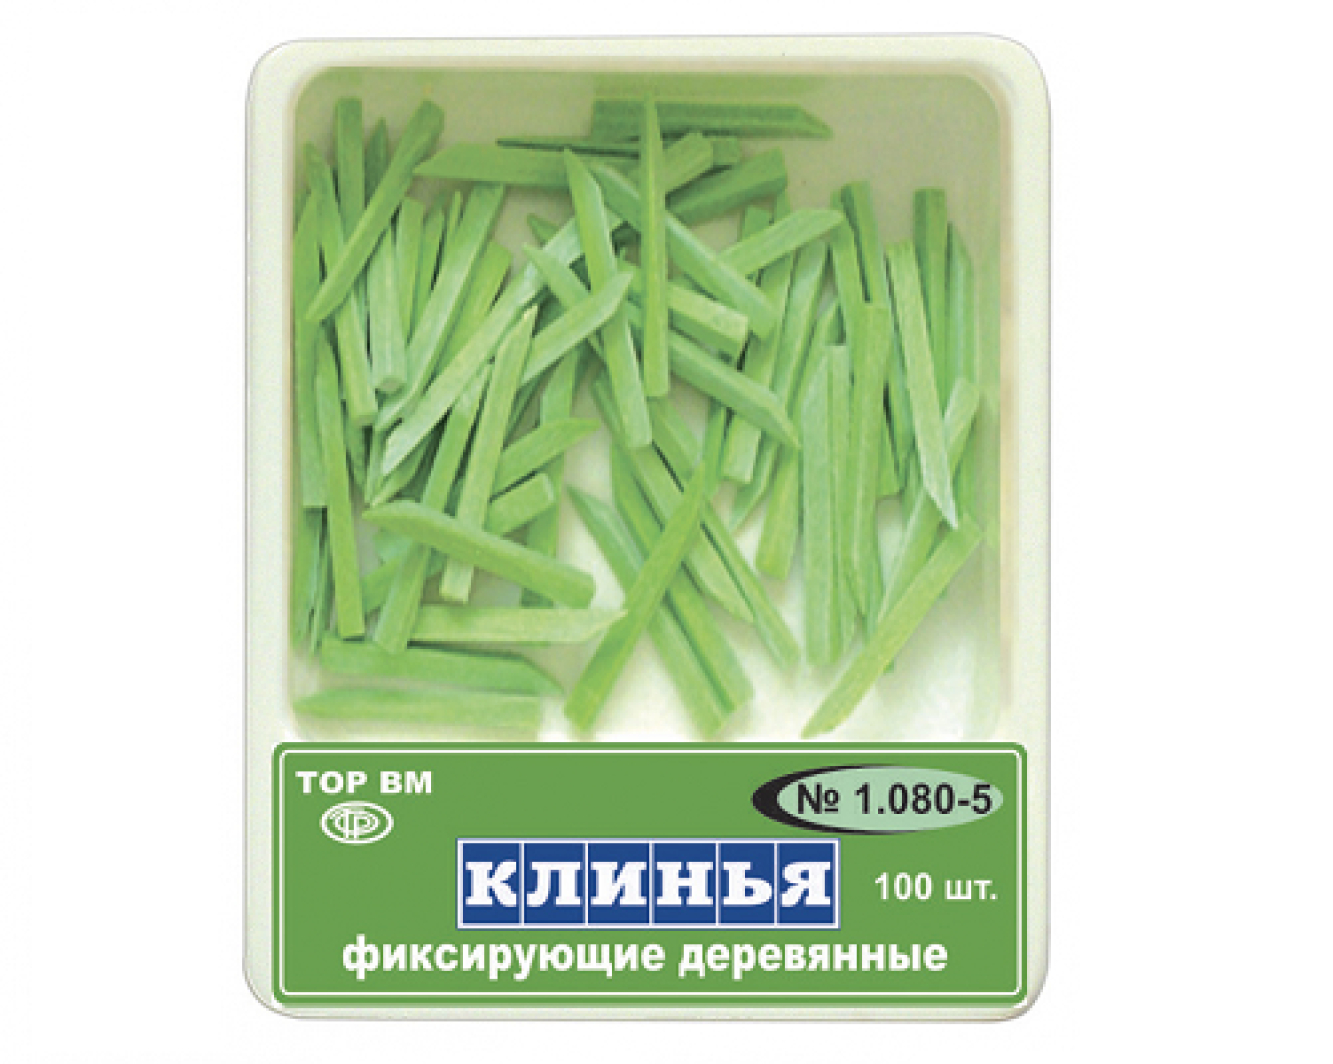 1.080-5 Клинья фиксирующие, деревянные, зеленые, ТОР ВМ (Россия)